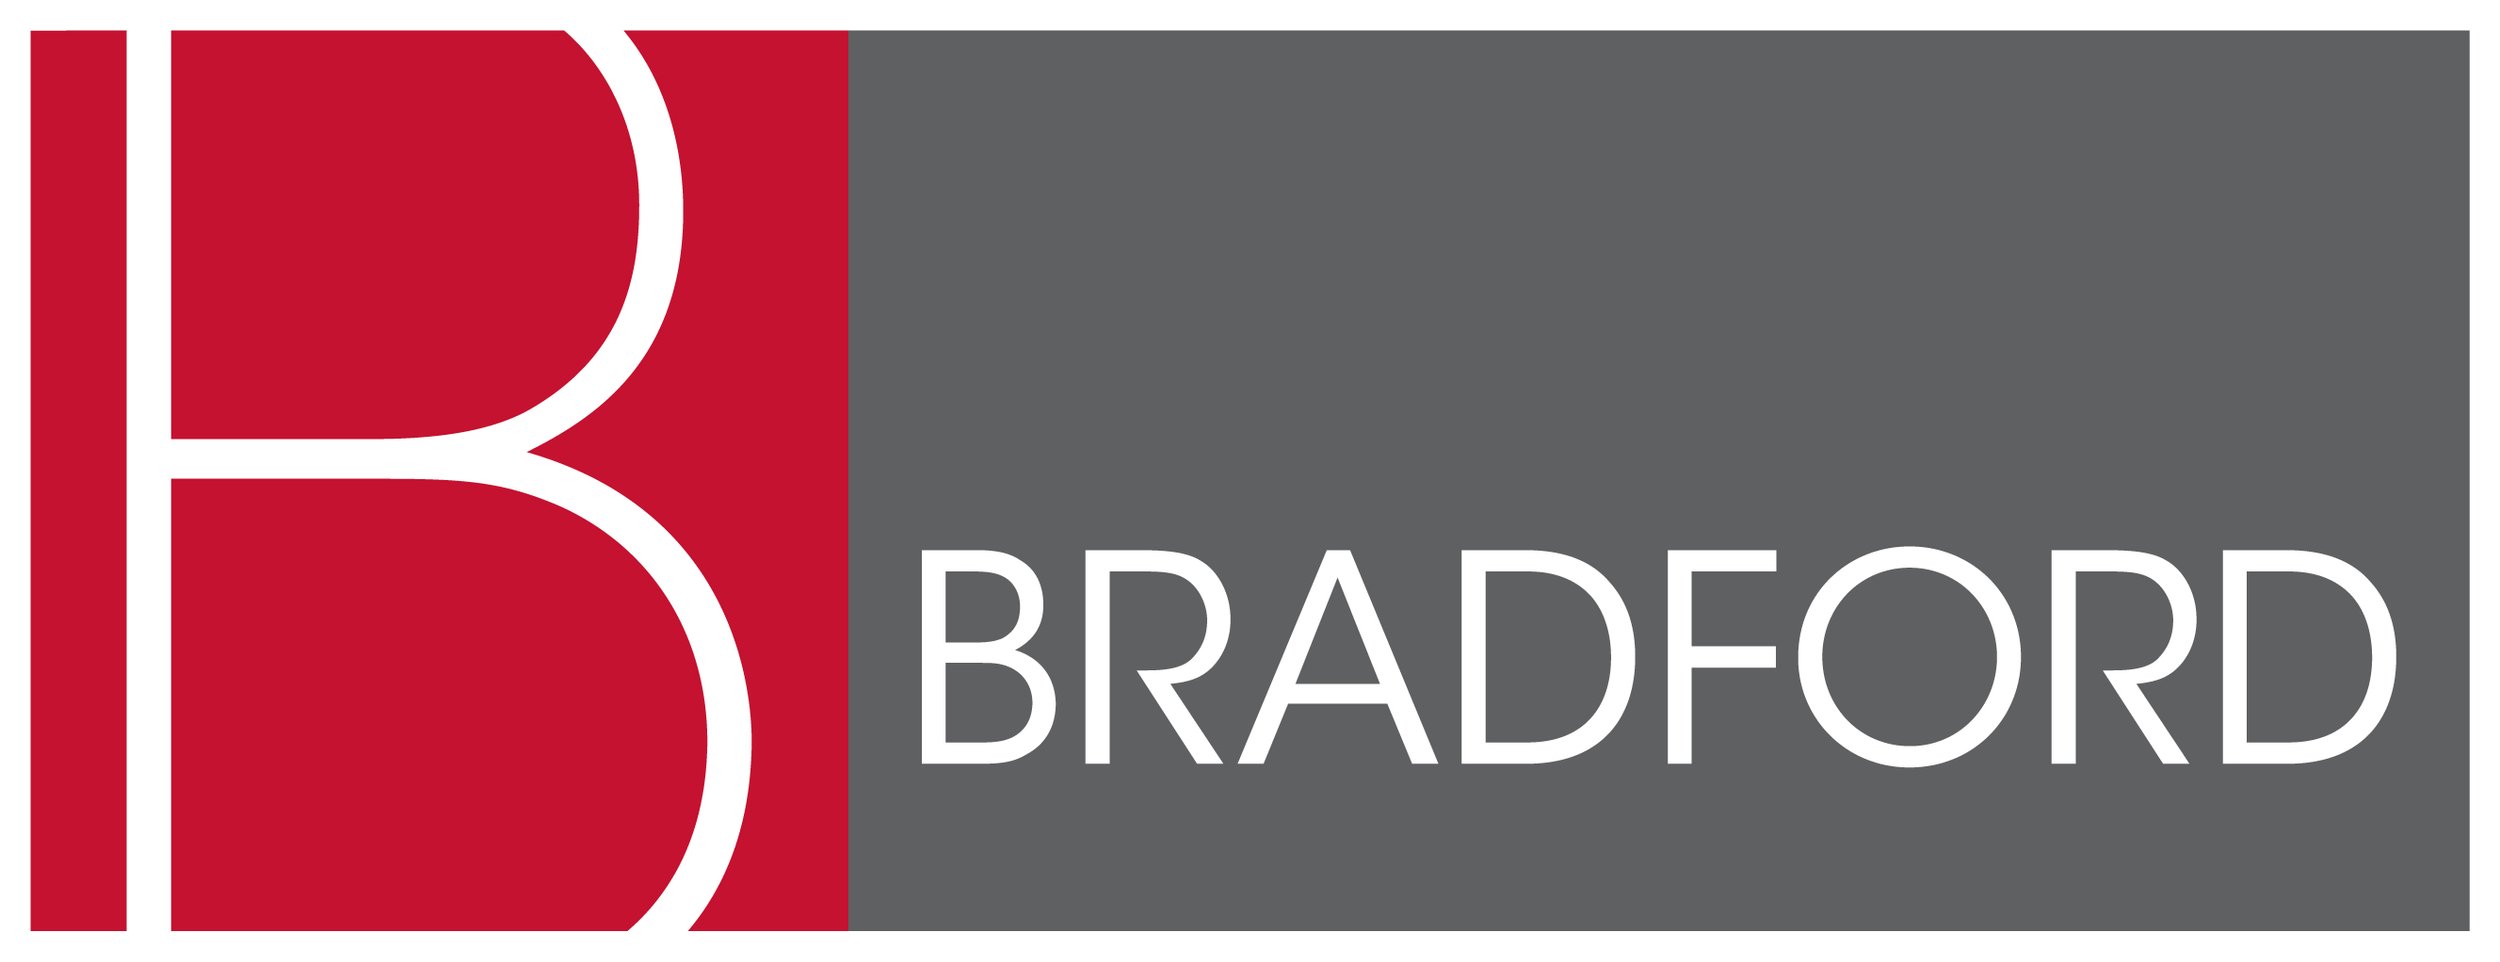 Bradford logo_color_300dpi.jpg